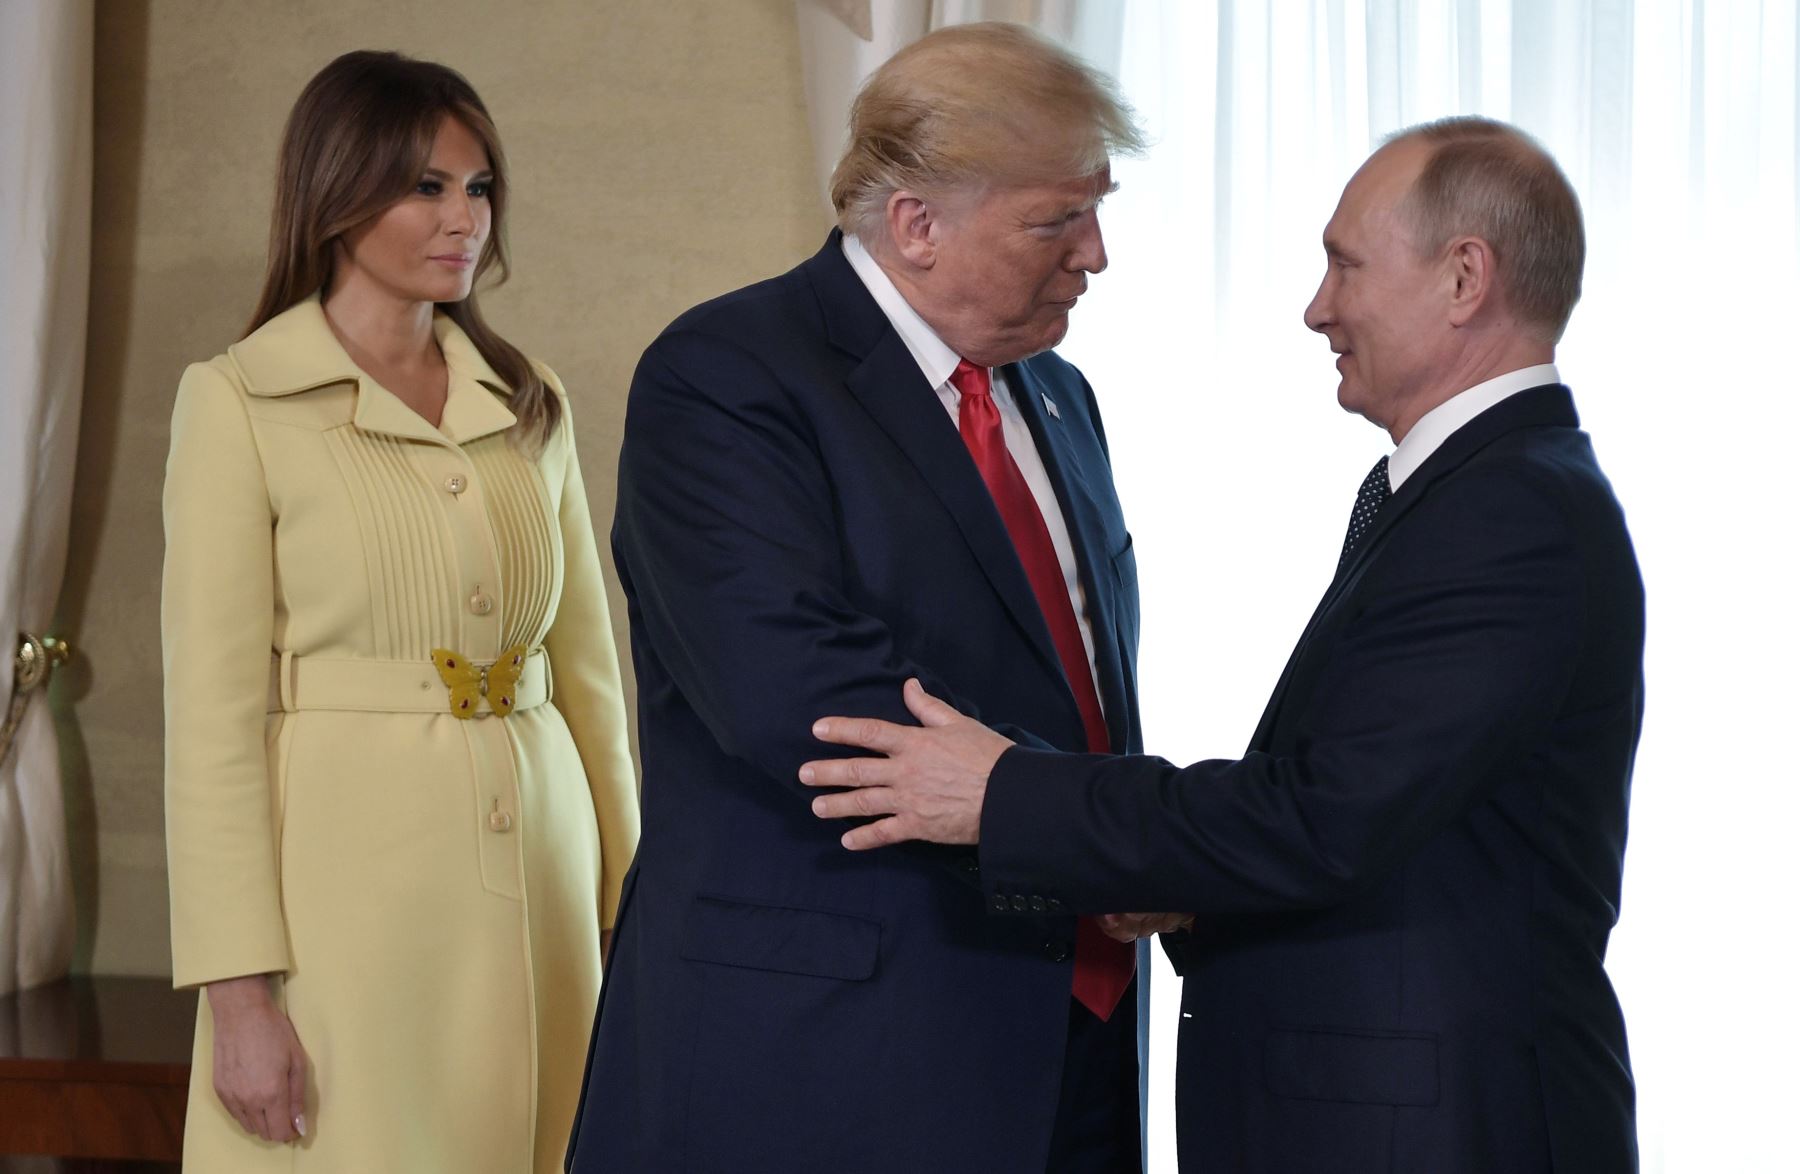 El presidente estadounidense Donald Trump estrecha la mano del presidente de Rusia, Vladimir Putin, junto a la primera dama estadounidense, Melania Trump, antes de una reunión en Helsinki. AFP